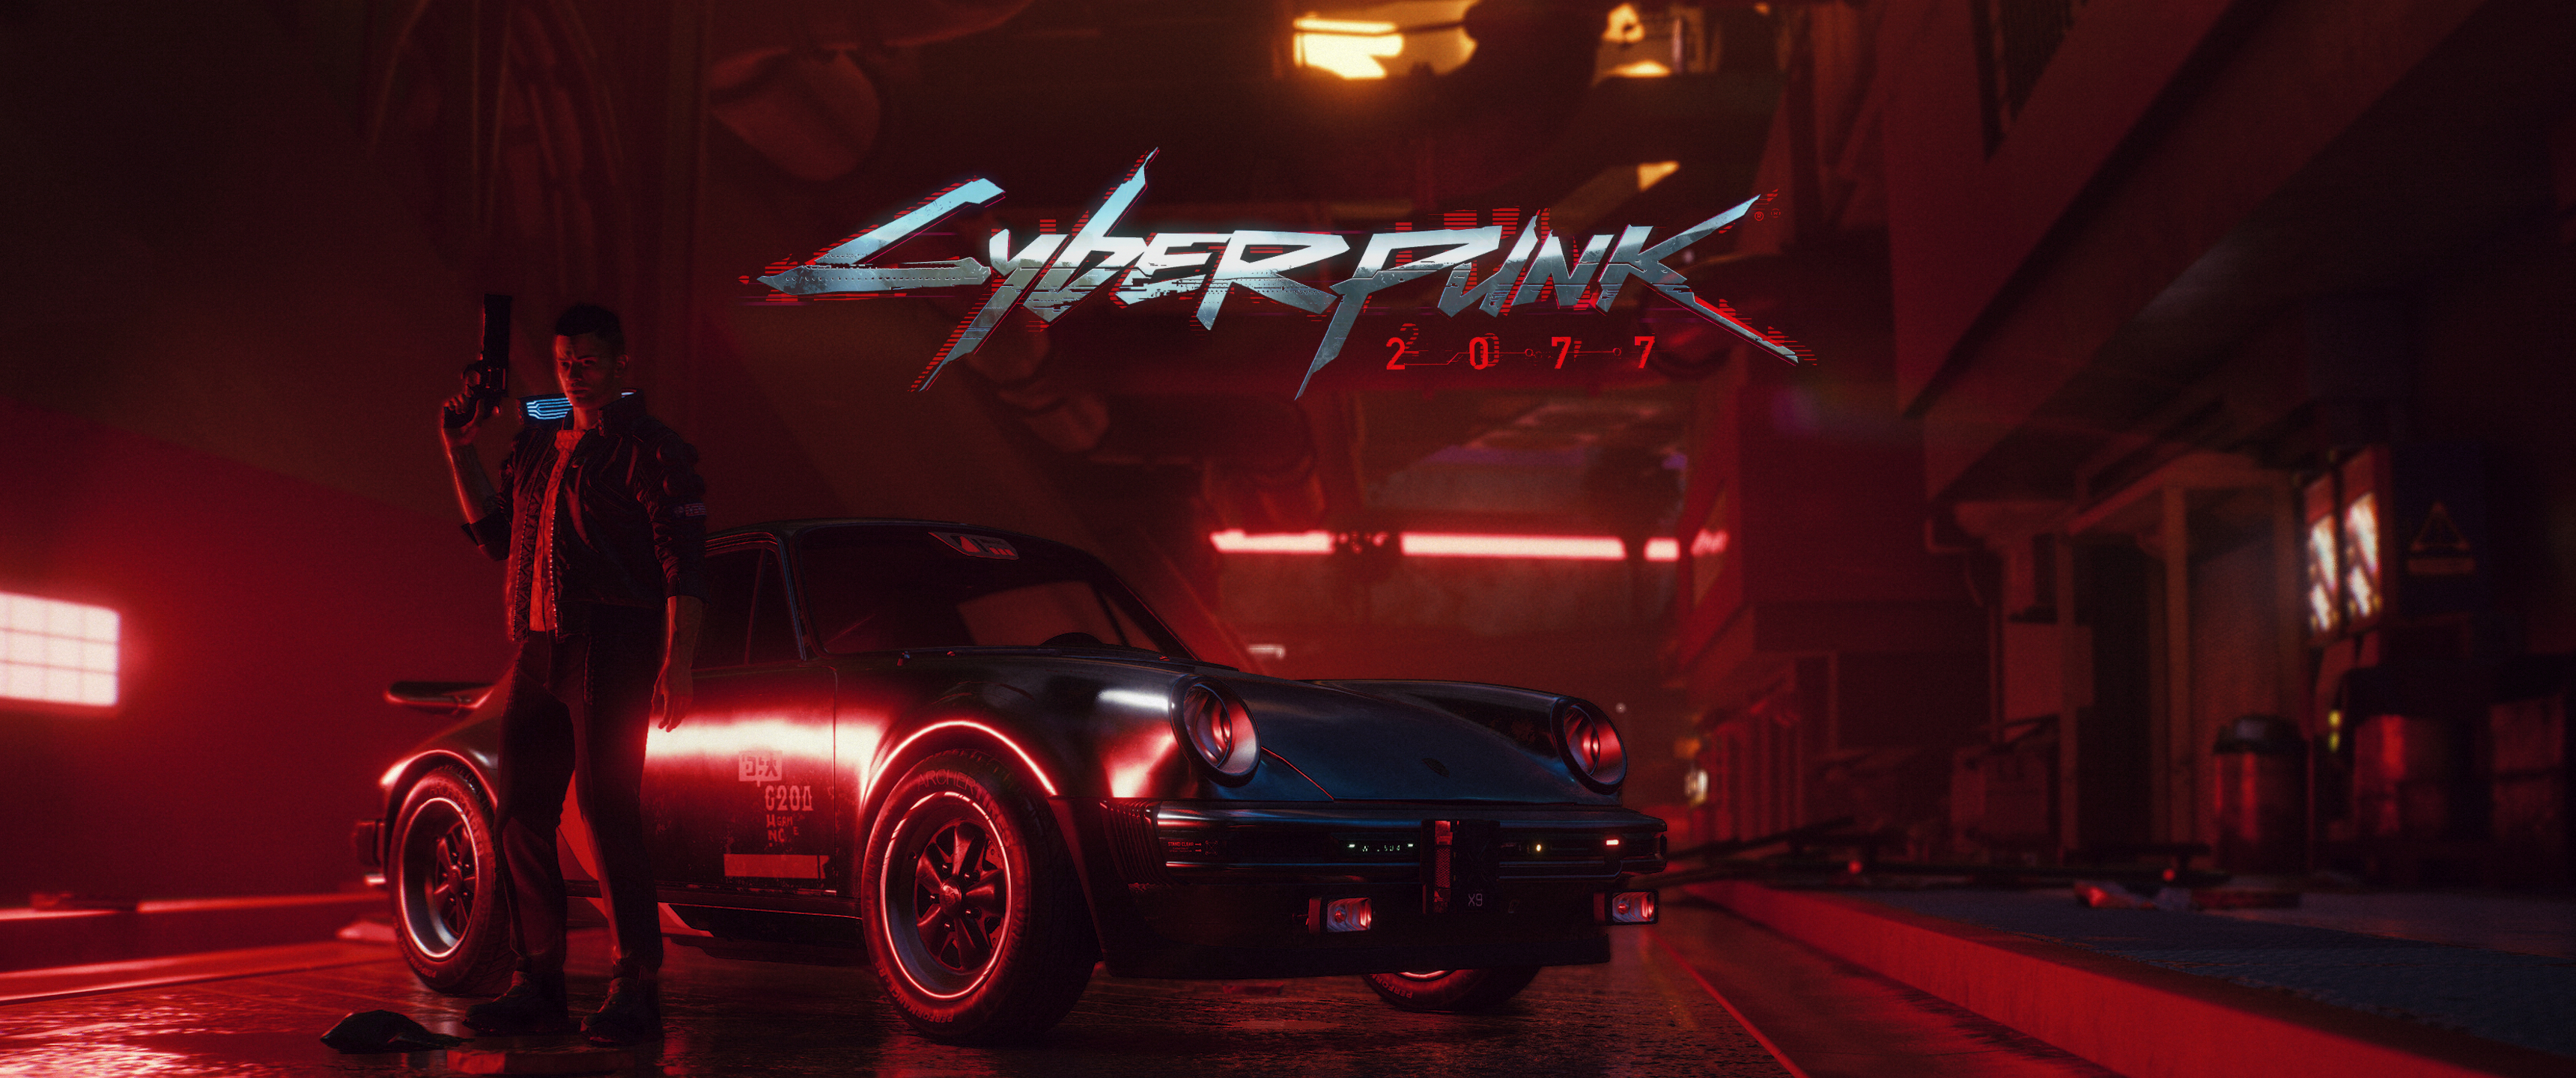 Cyberpunk 2077 wallpaper là lựa chọn tuyệt vời cho những người yêu thích thể loại game nhập vai cyberpunk. Hình ảnh sắc nét và đầy ấn tượng này sẽ đưa bạn đến với thế giới tương lai đầy màu sắc và đầy cảm hứng.